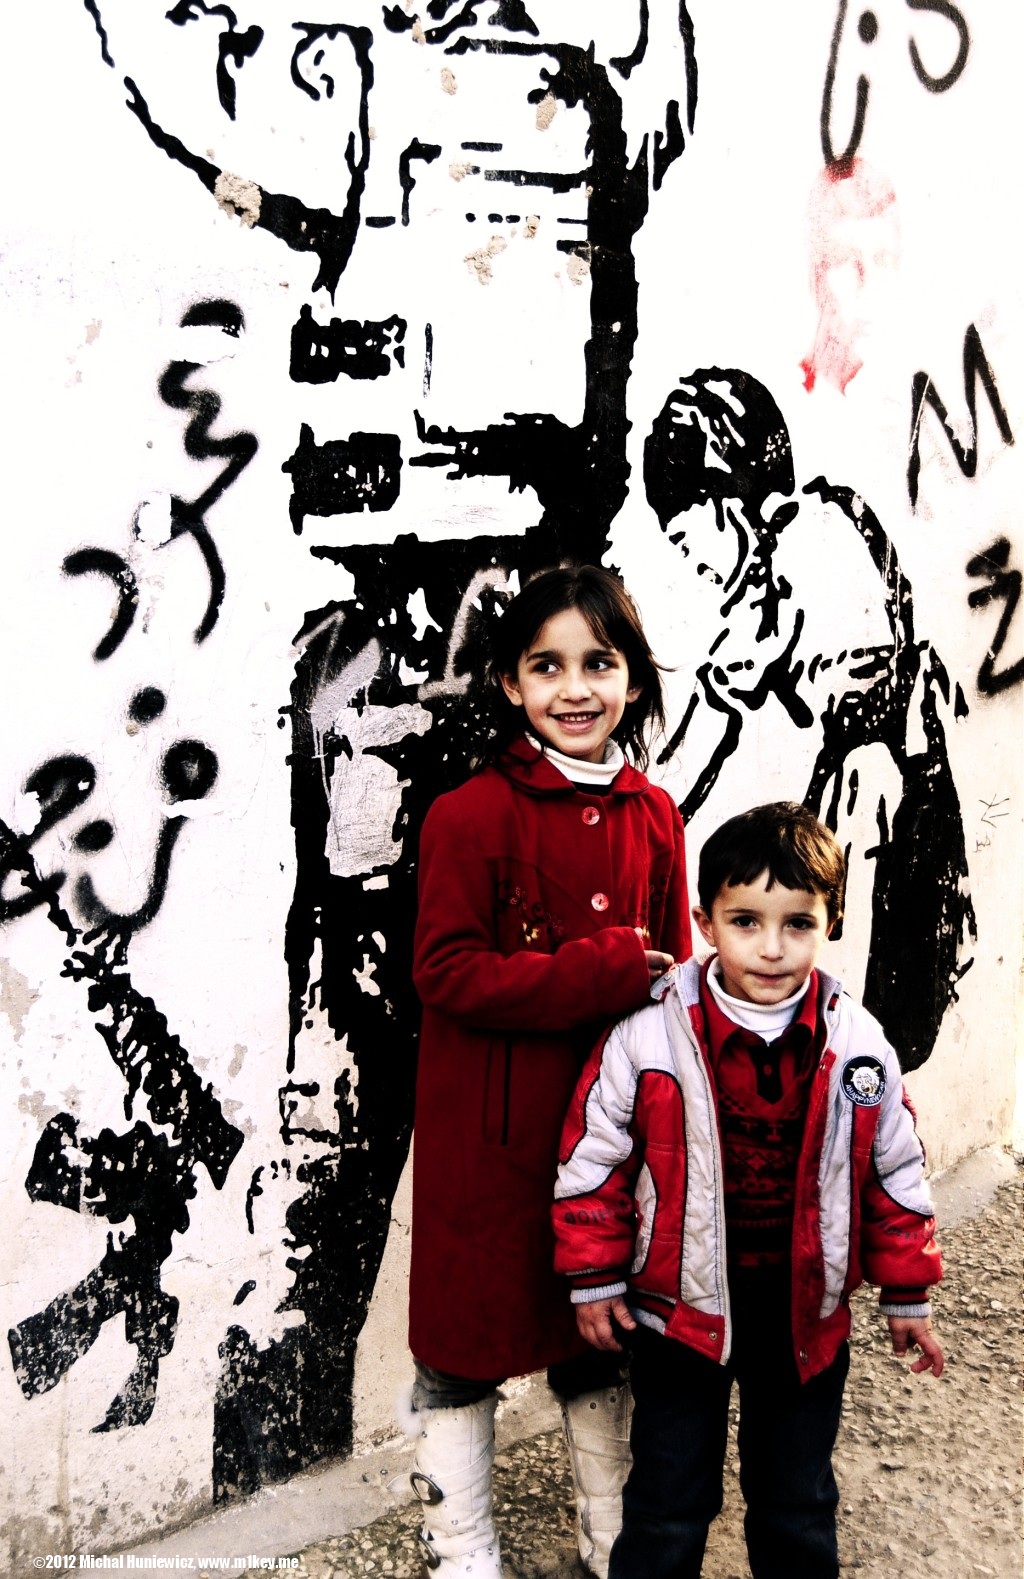 Children - West Bank 2011